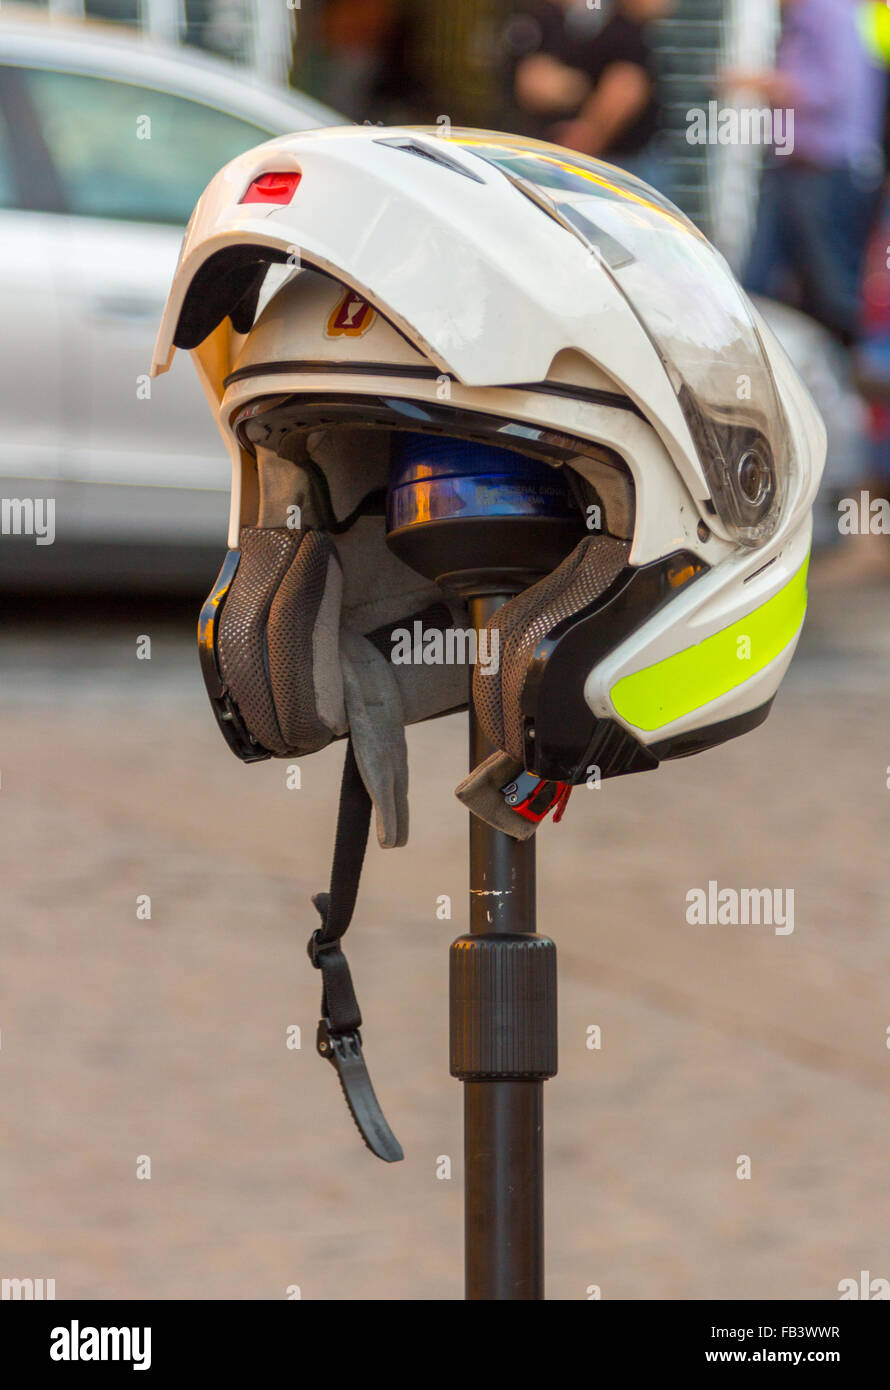 Motorcycle helmet white Stock Photo - Alamy